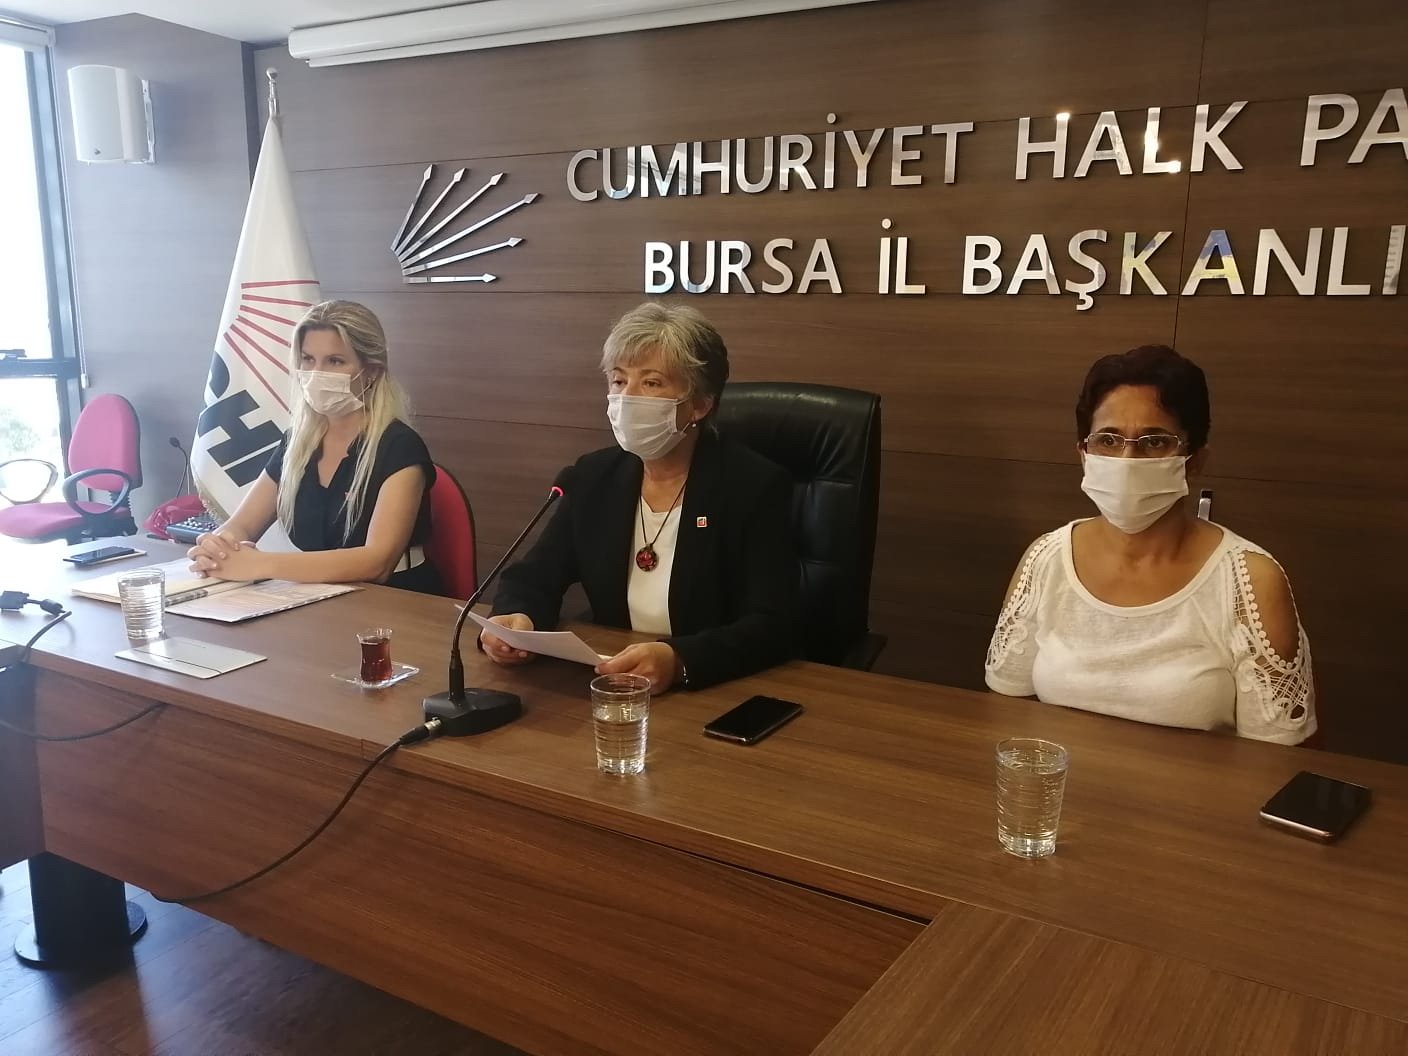 Okumuş: “İstanbul Sözleşmesi Kadınlara Güvencedir”